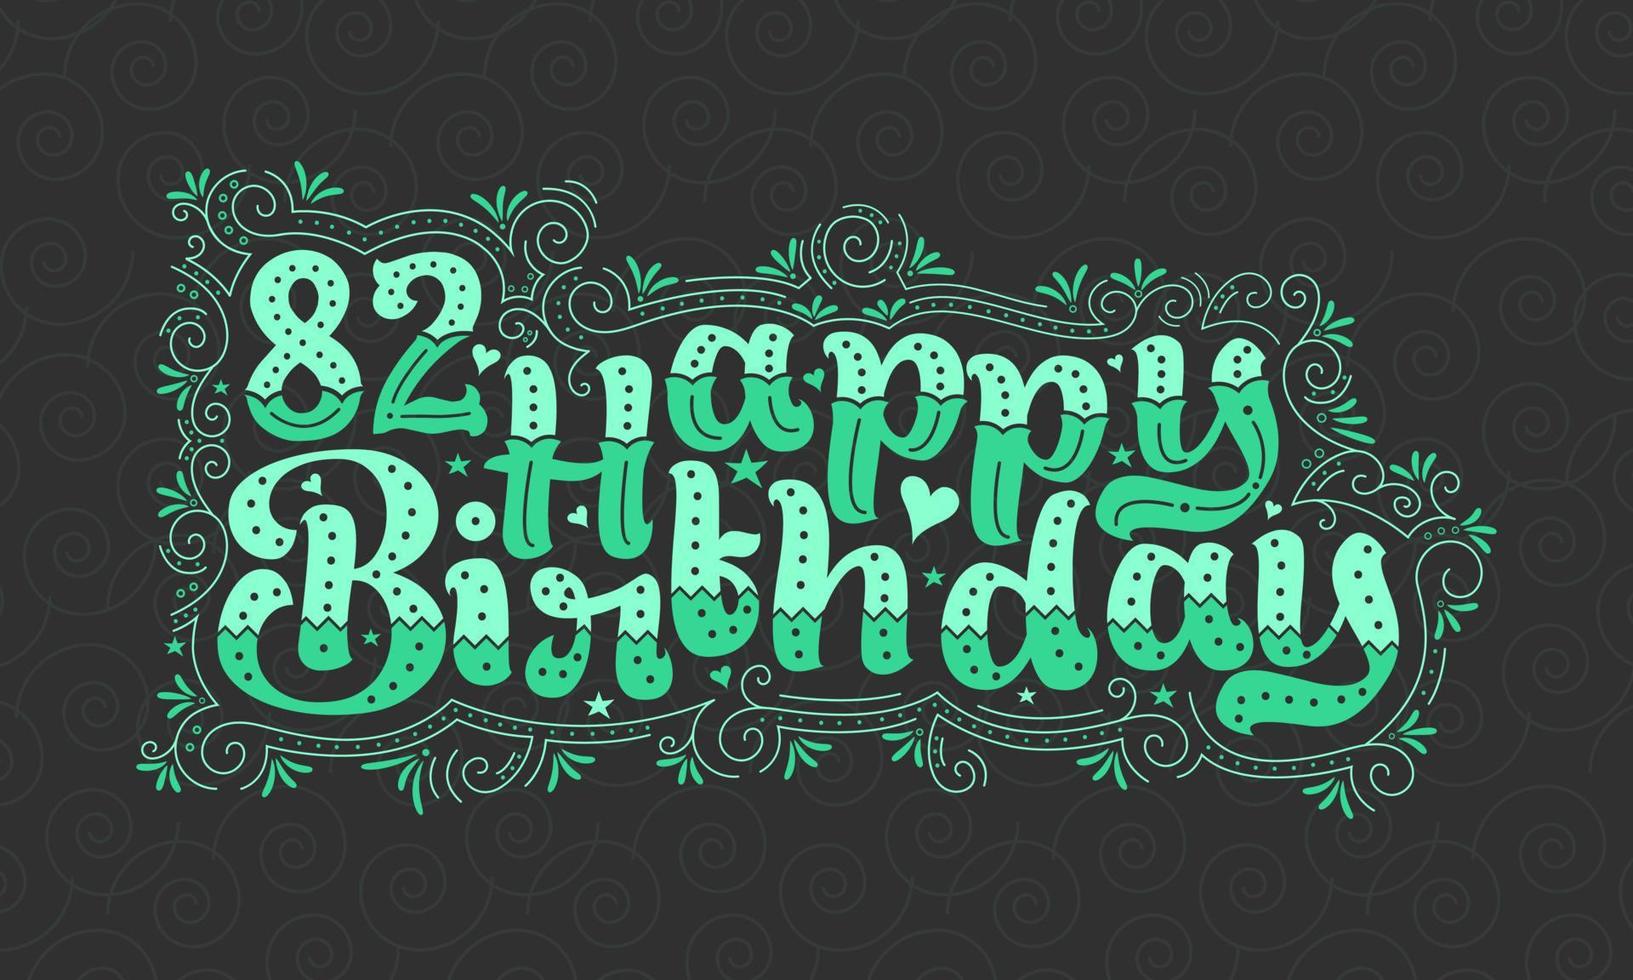 82a scritta di buon compleanno, bellissimo design tipografico di 82 anni con punti verdi, linee e foglie. vettore